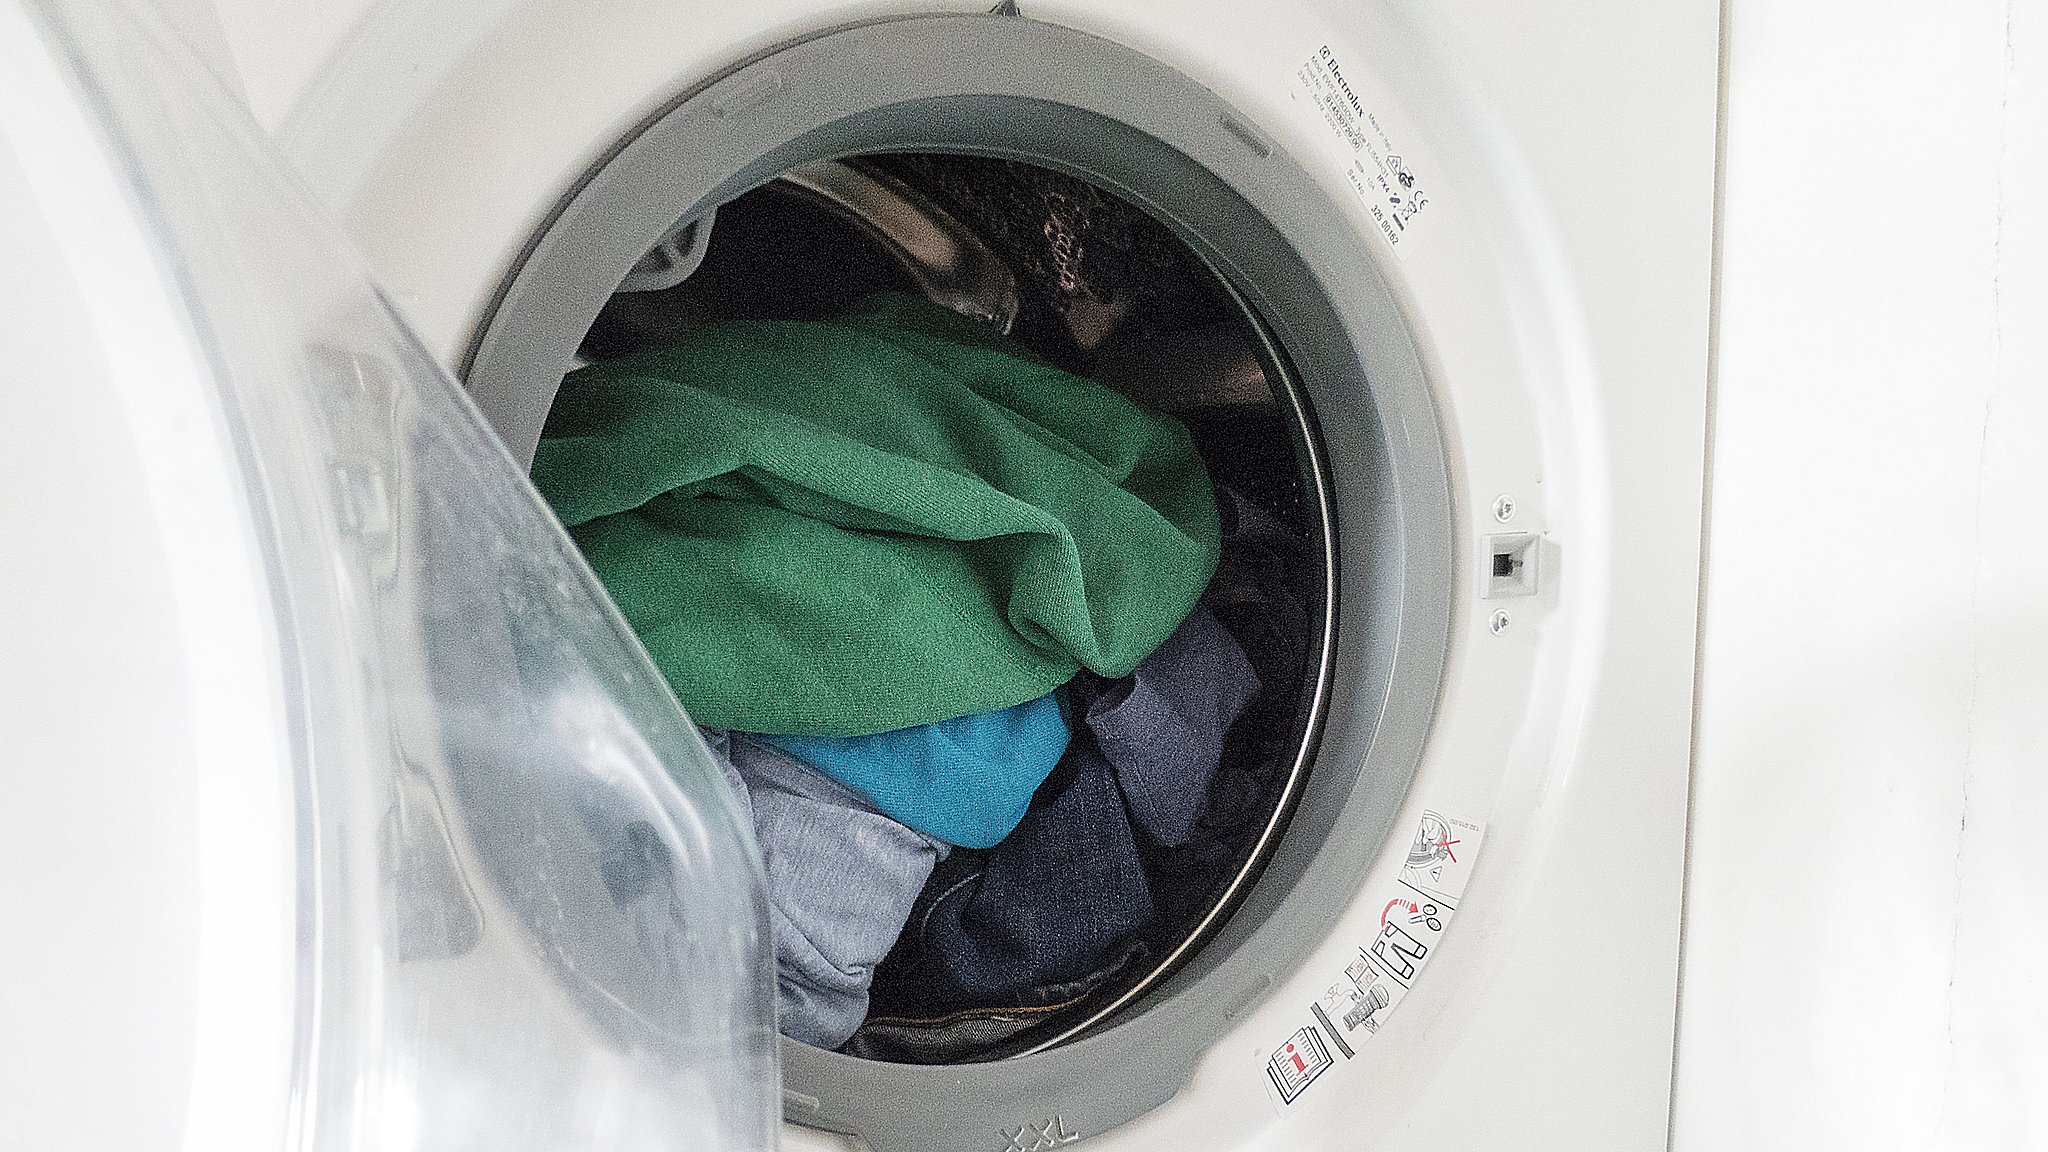 Spar på I tidsrum skal du undgå bruge vaskemaskinen | TV2 Fyn